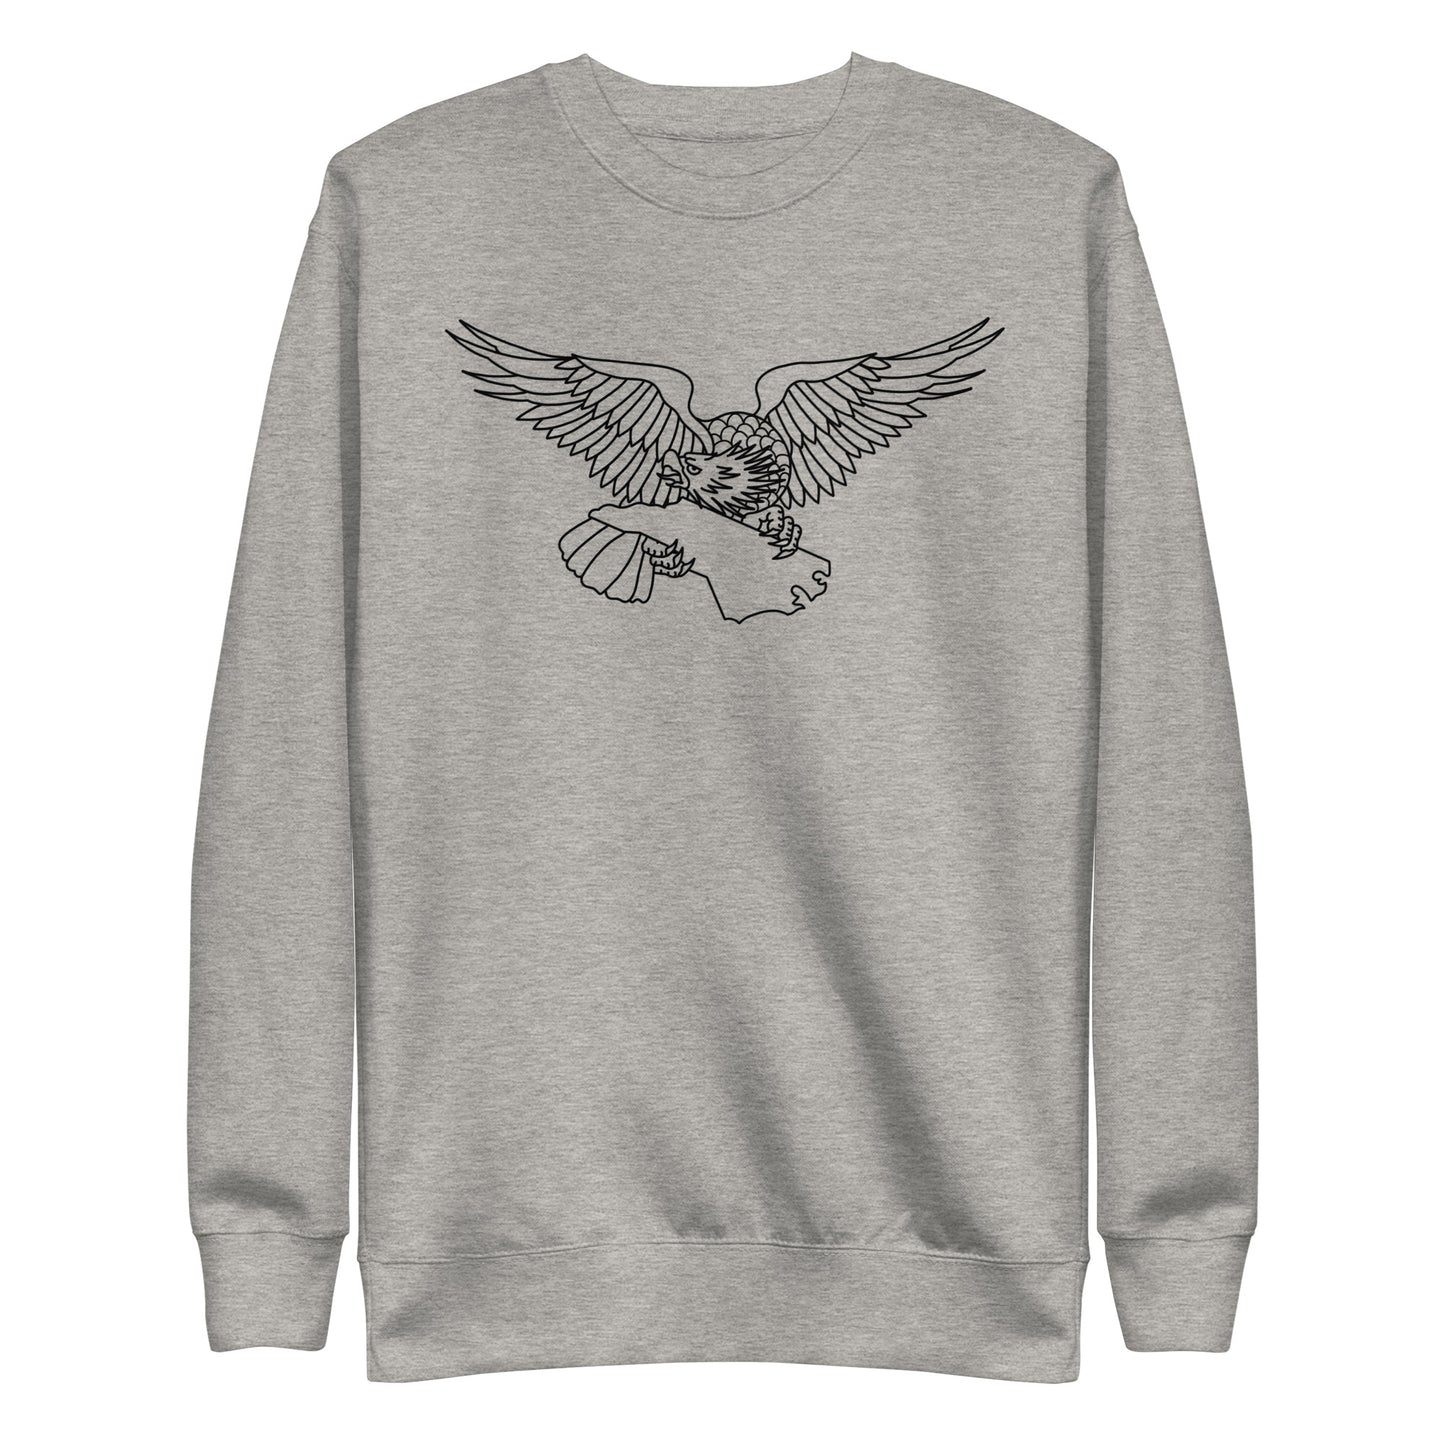 Unisex Sweatshirt - Eagle NC - Dark on Light